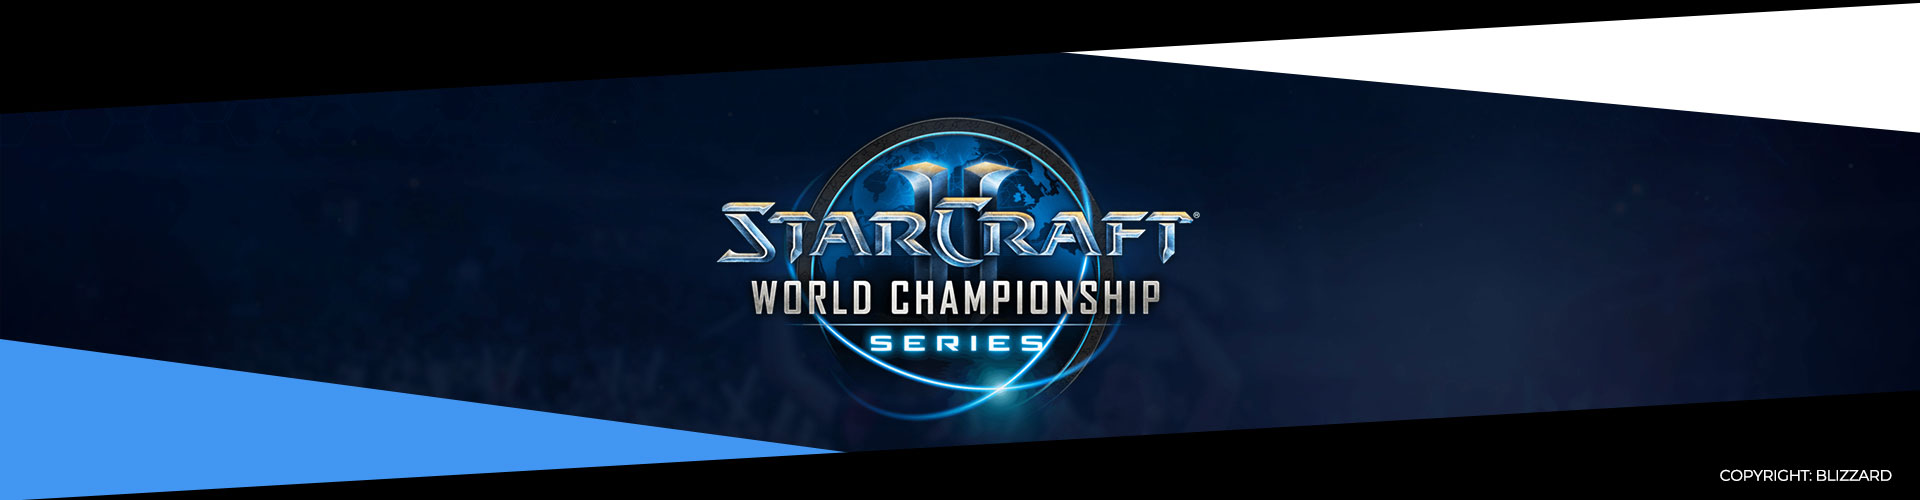 Eventsida för WCS Global Finals i Starcraft 2.